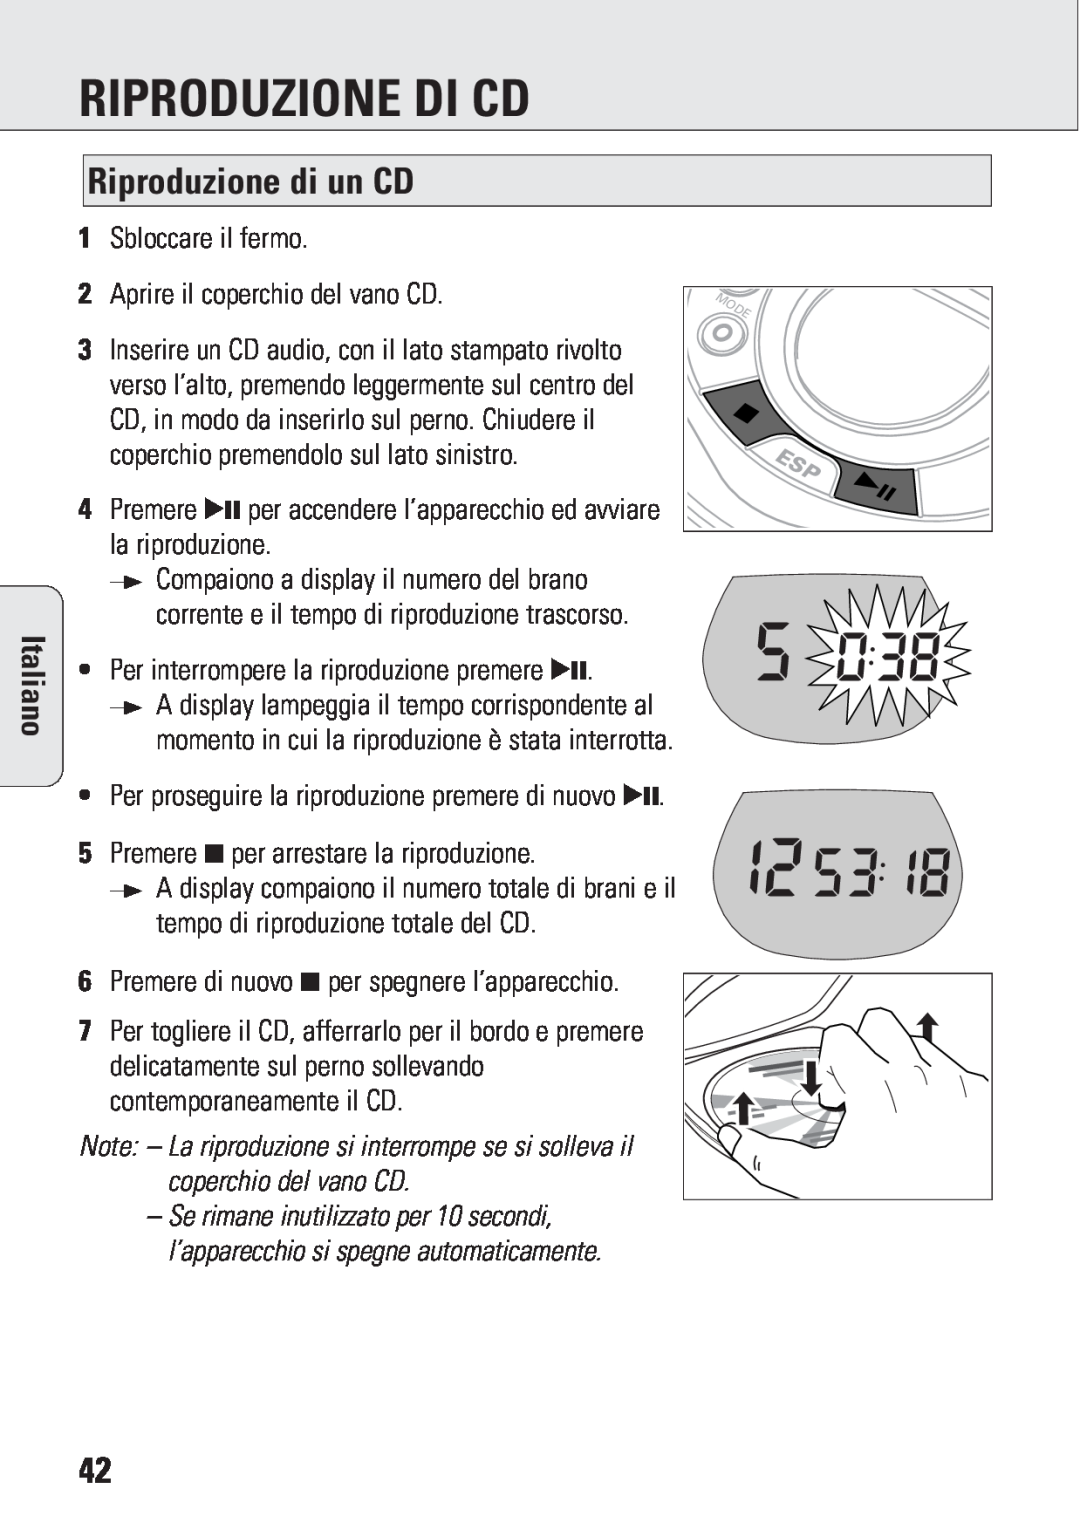 Philips ACT 7583 manual Riproduzione Di Cd, Riproduzione di un CD, Italiano 